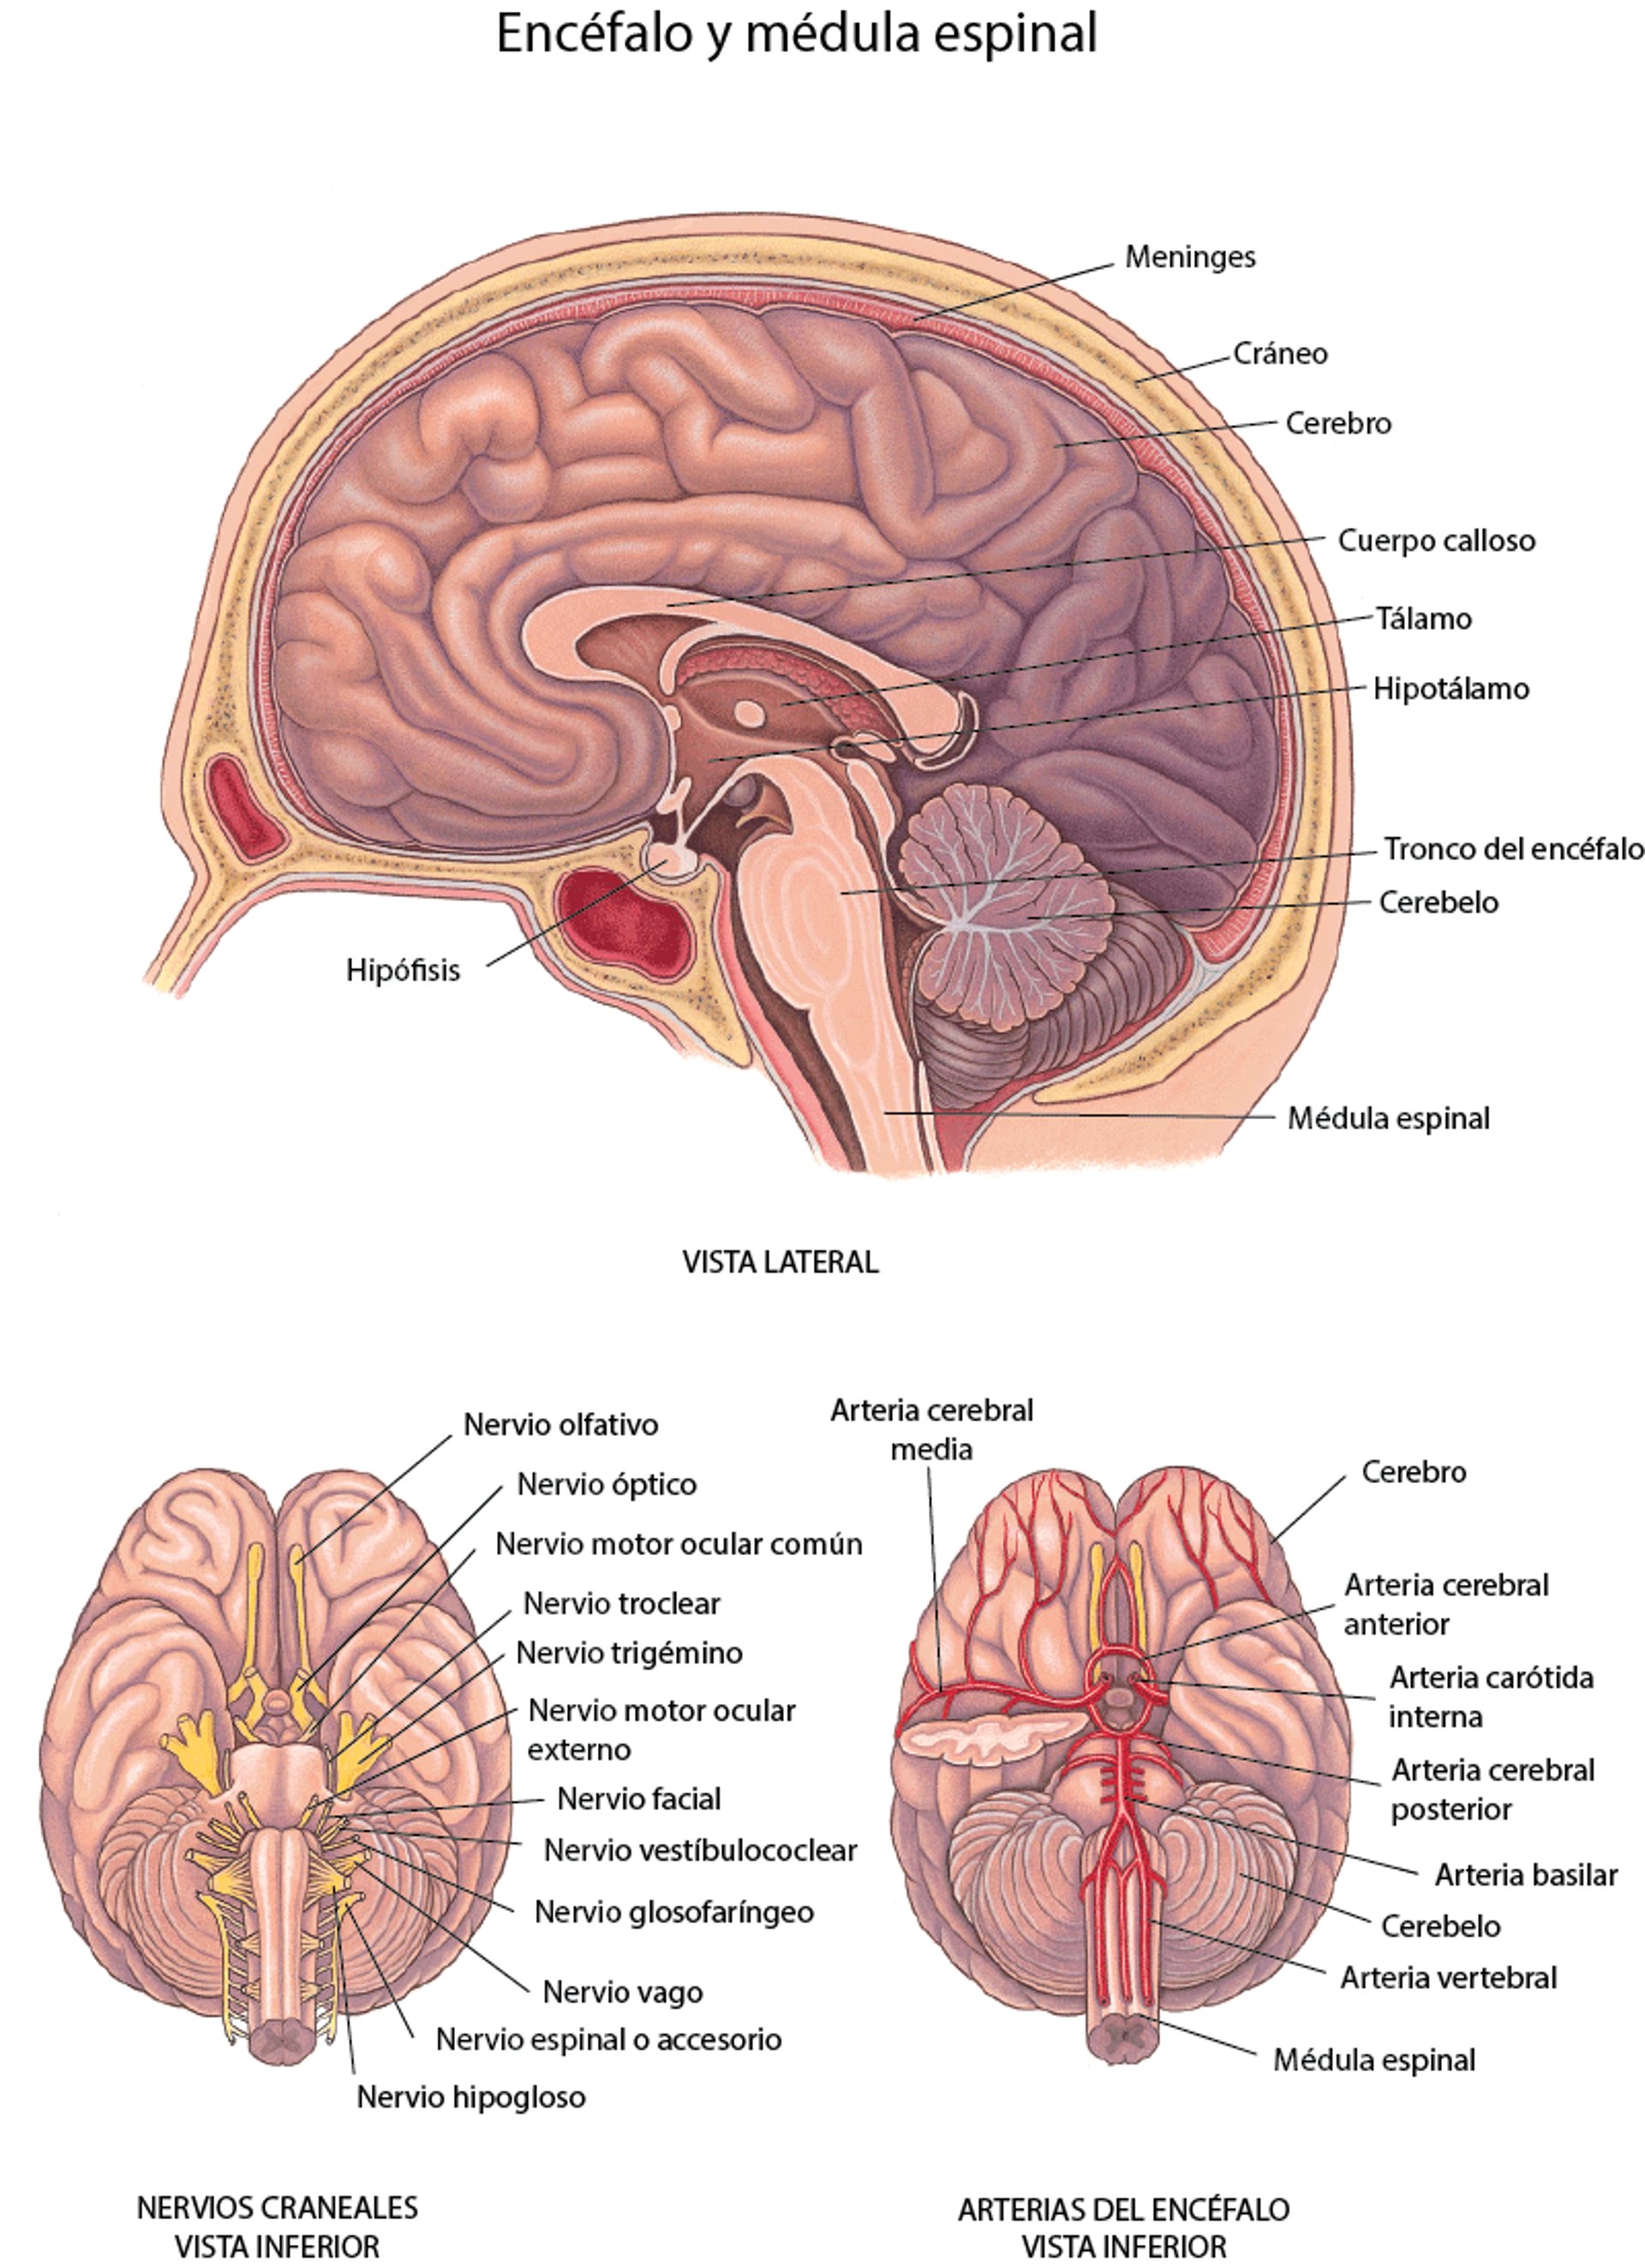 Cerebro: nervios y arterias